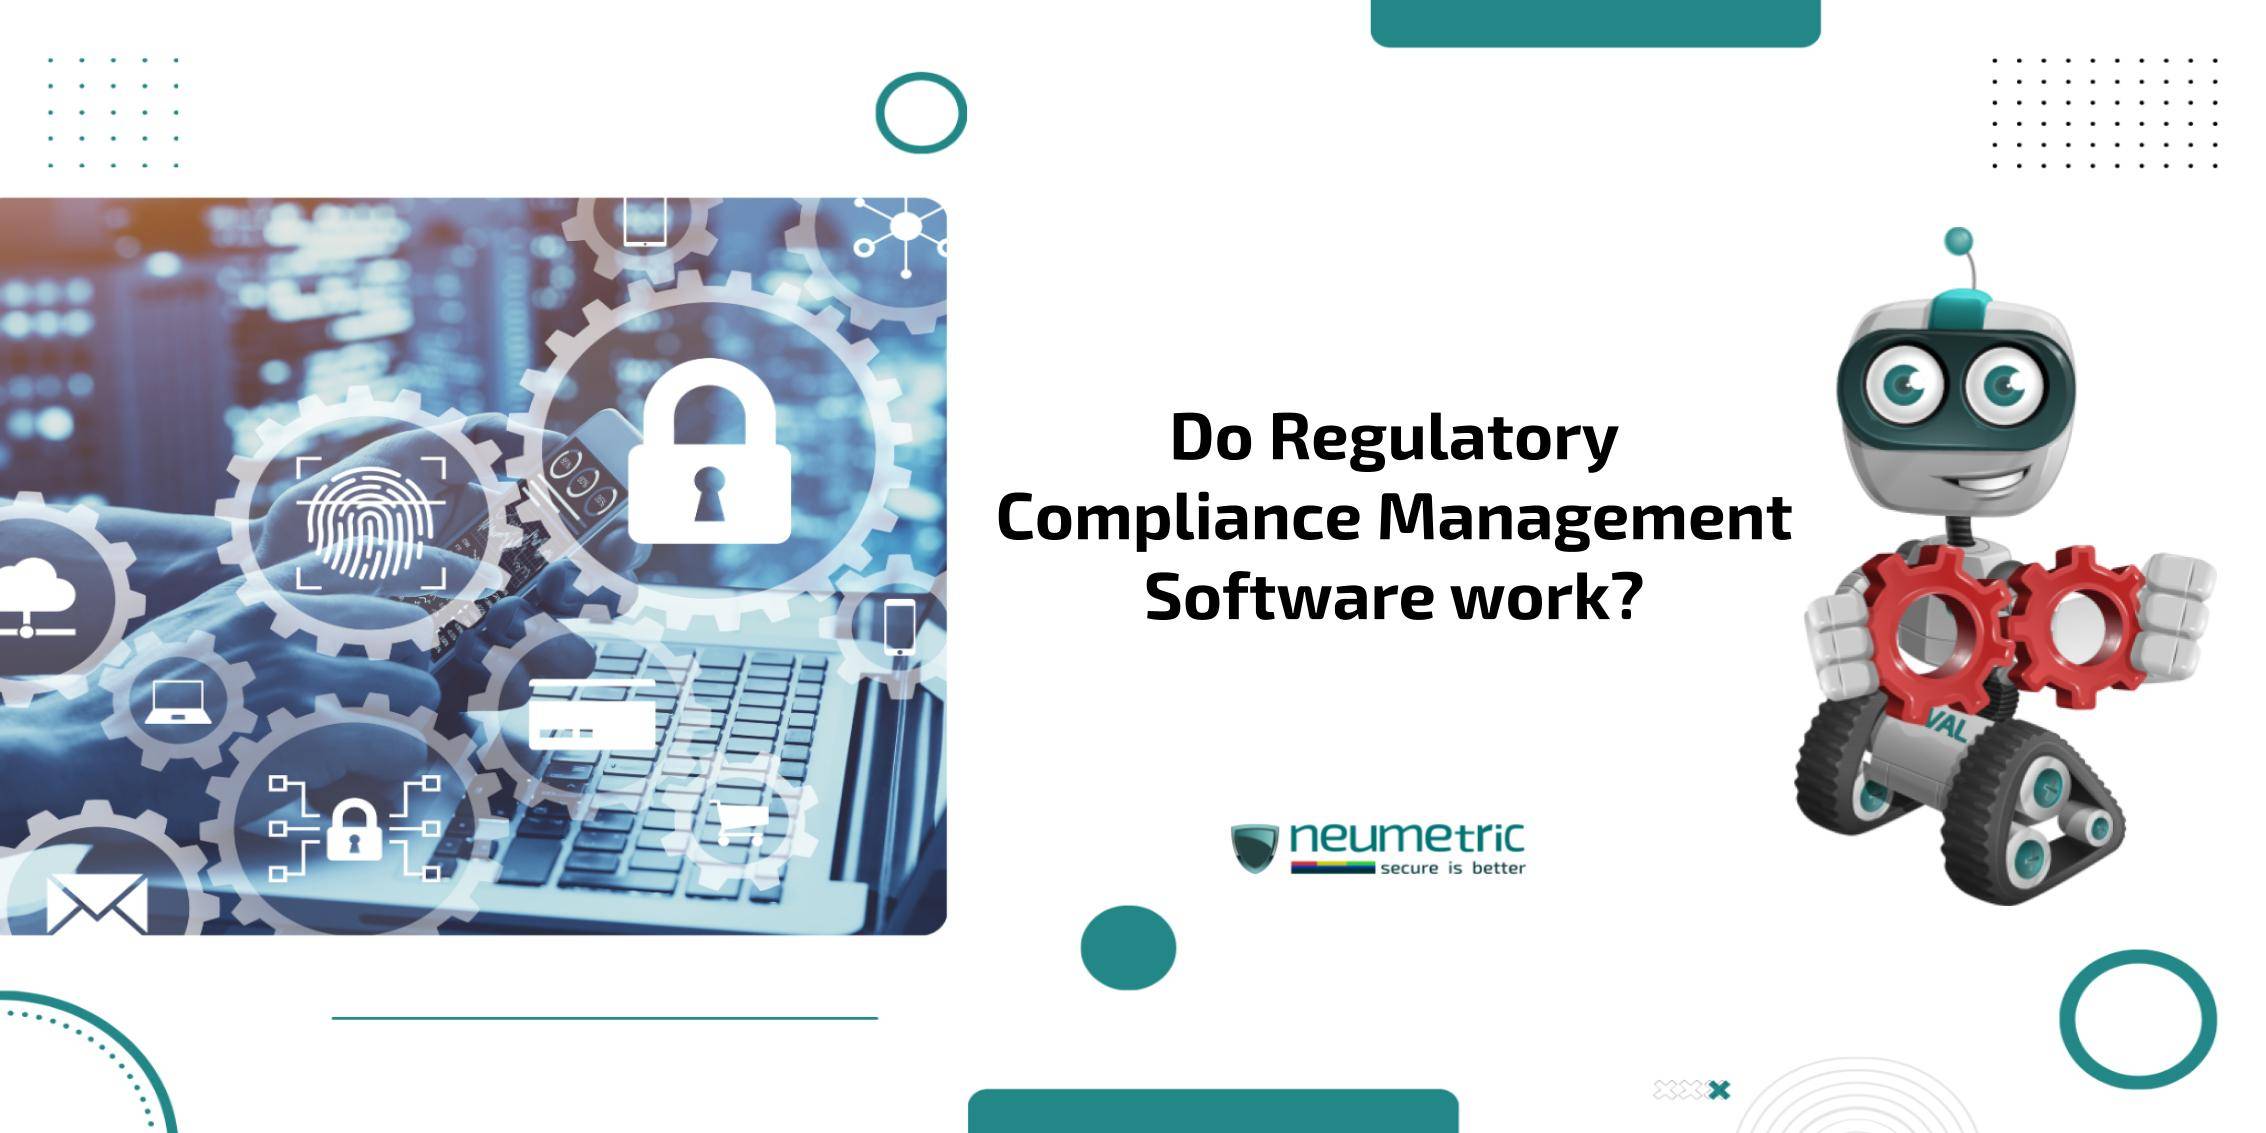 Regulatory compliance management software